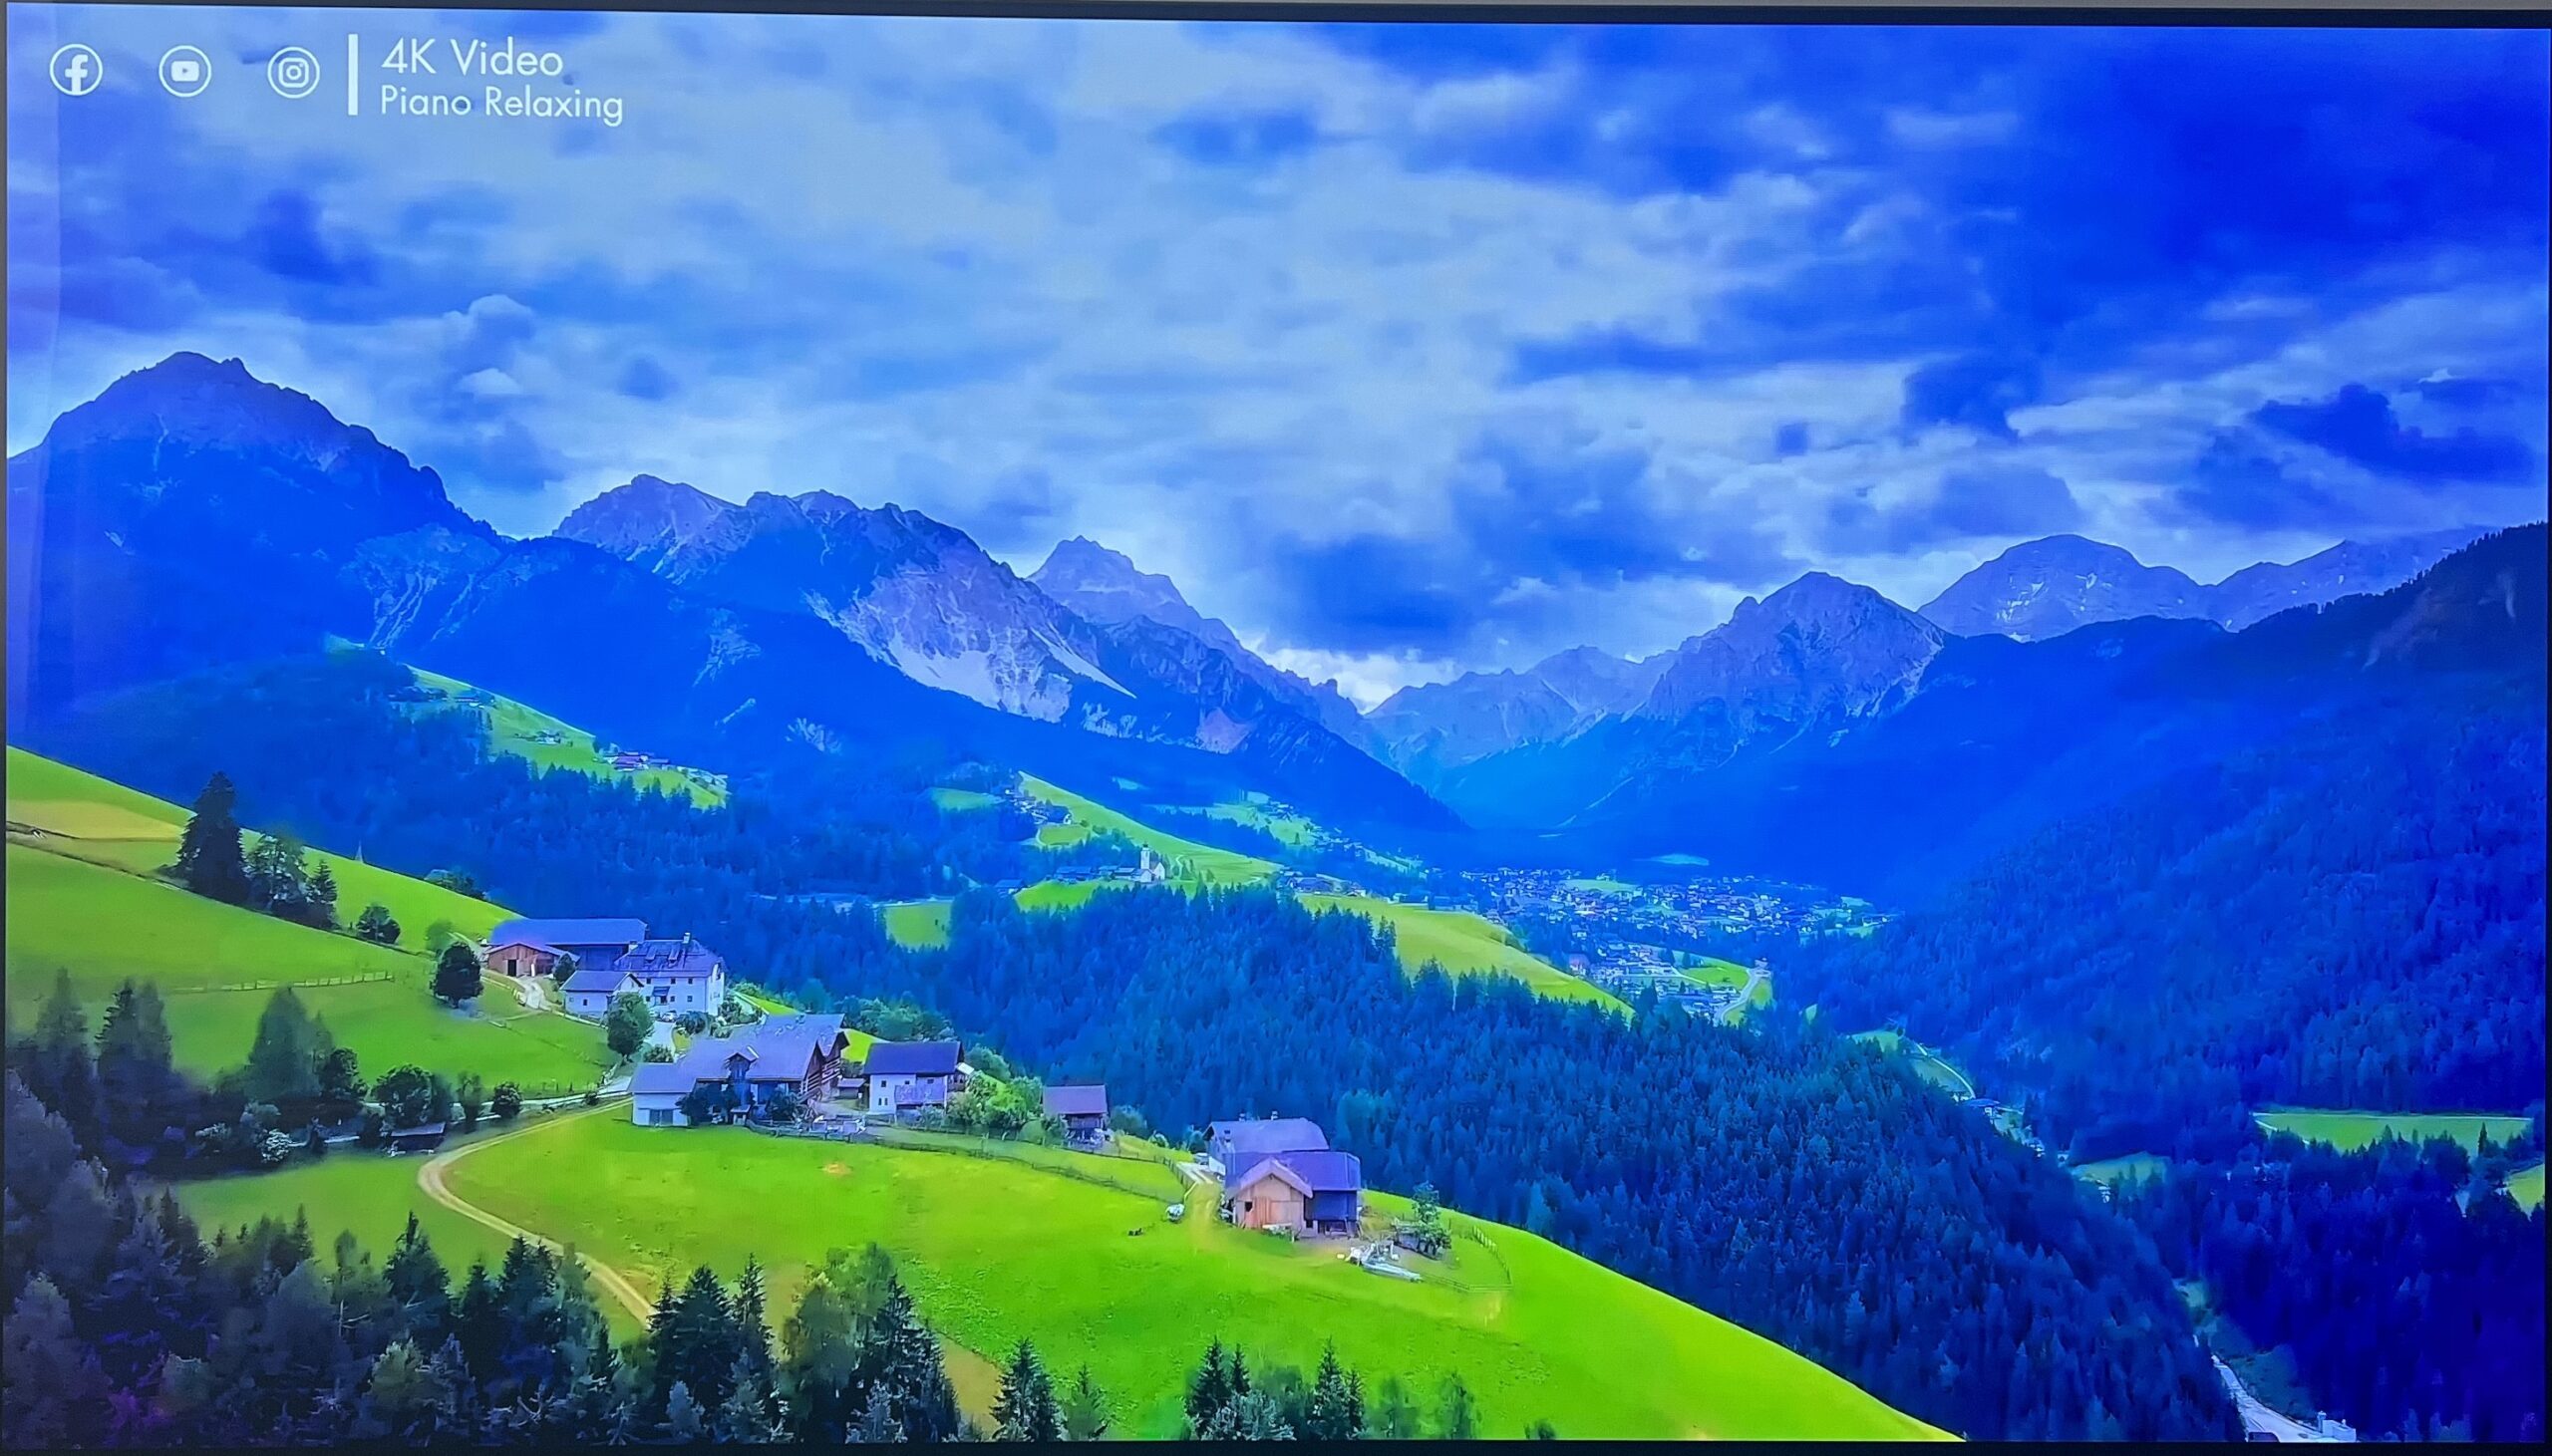 Kadr z filmu YouTube "FLYING OVER SWITZERLAND (4K UHD)" przed kalibracją